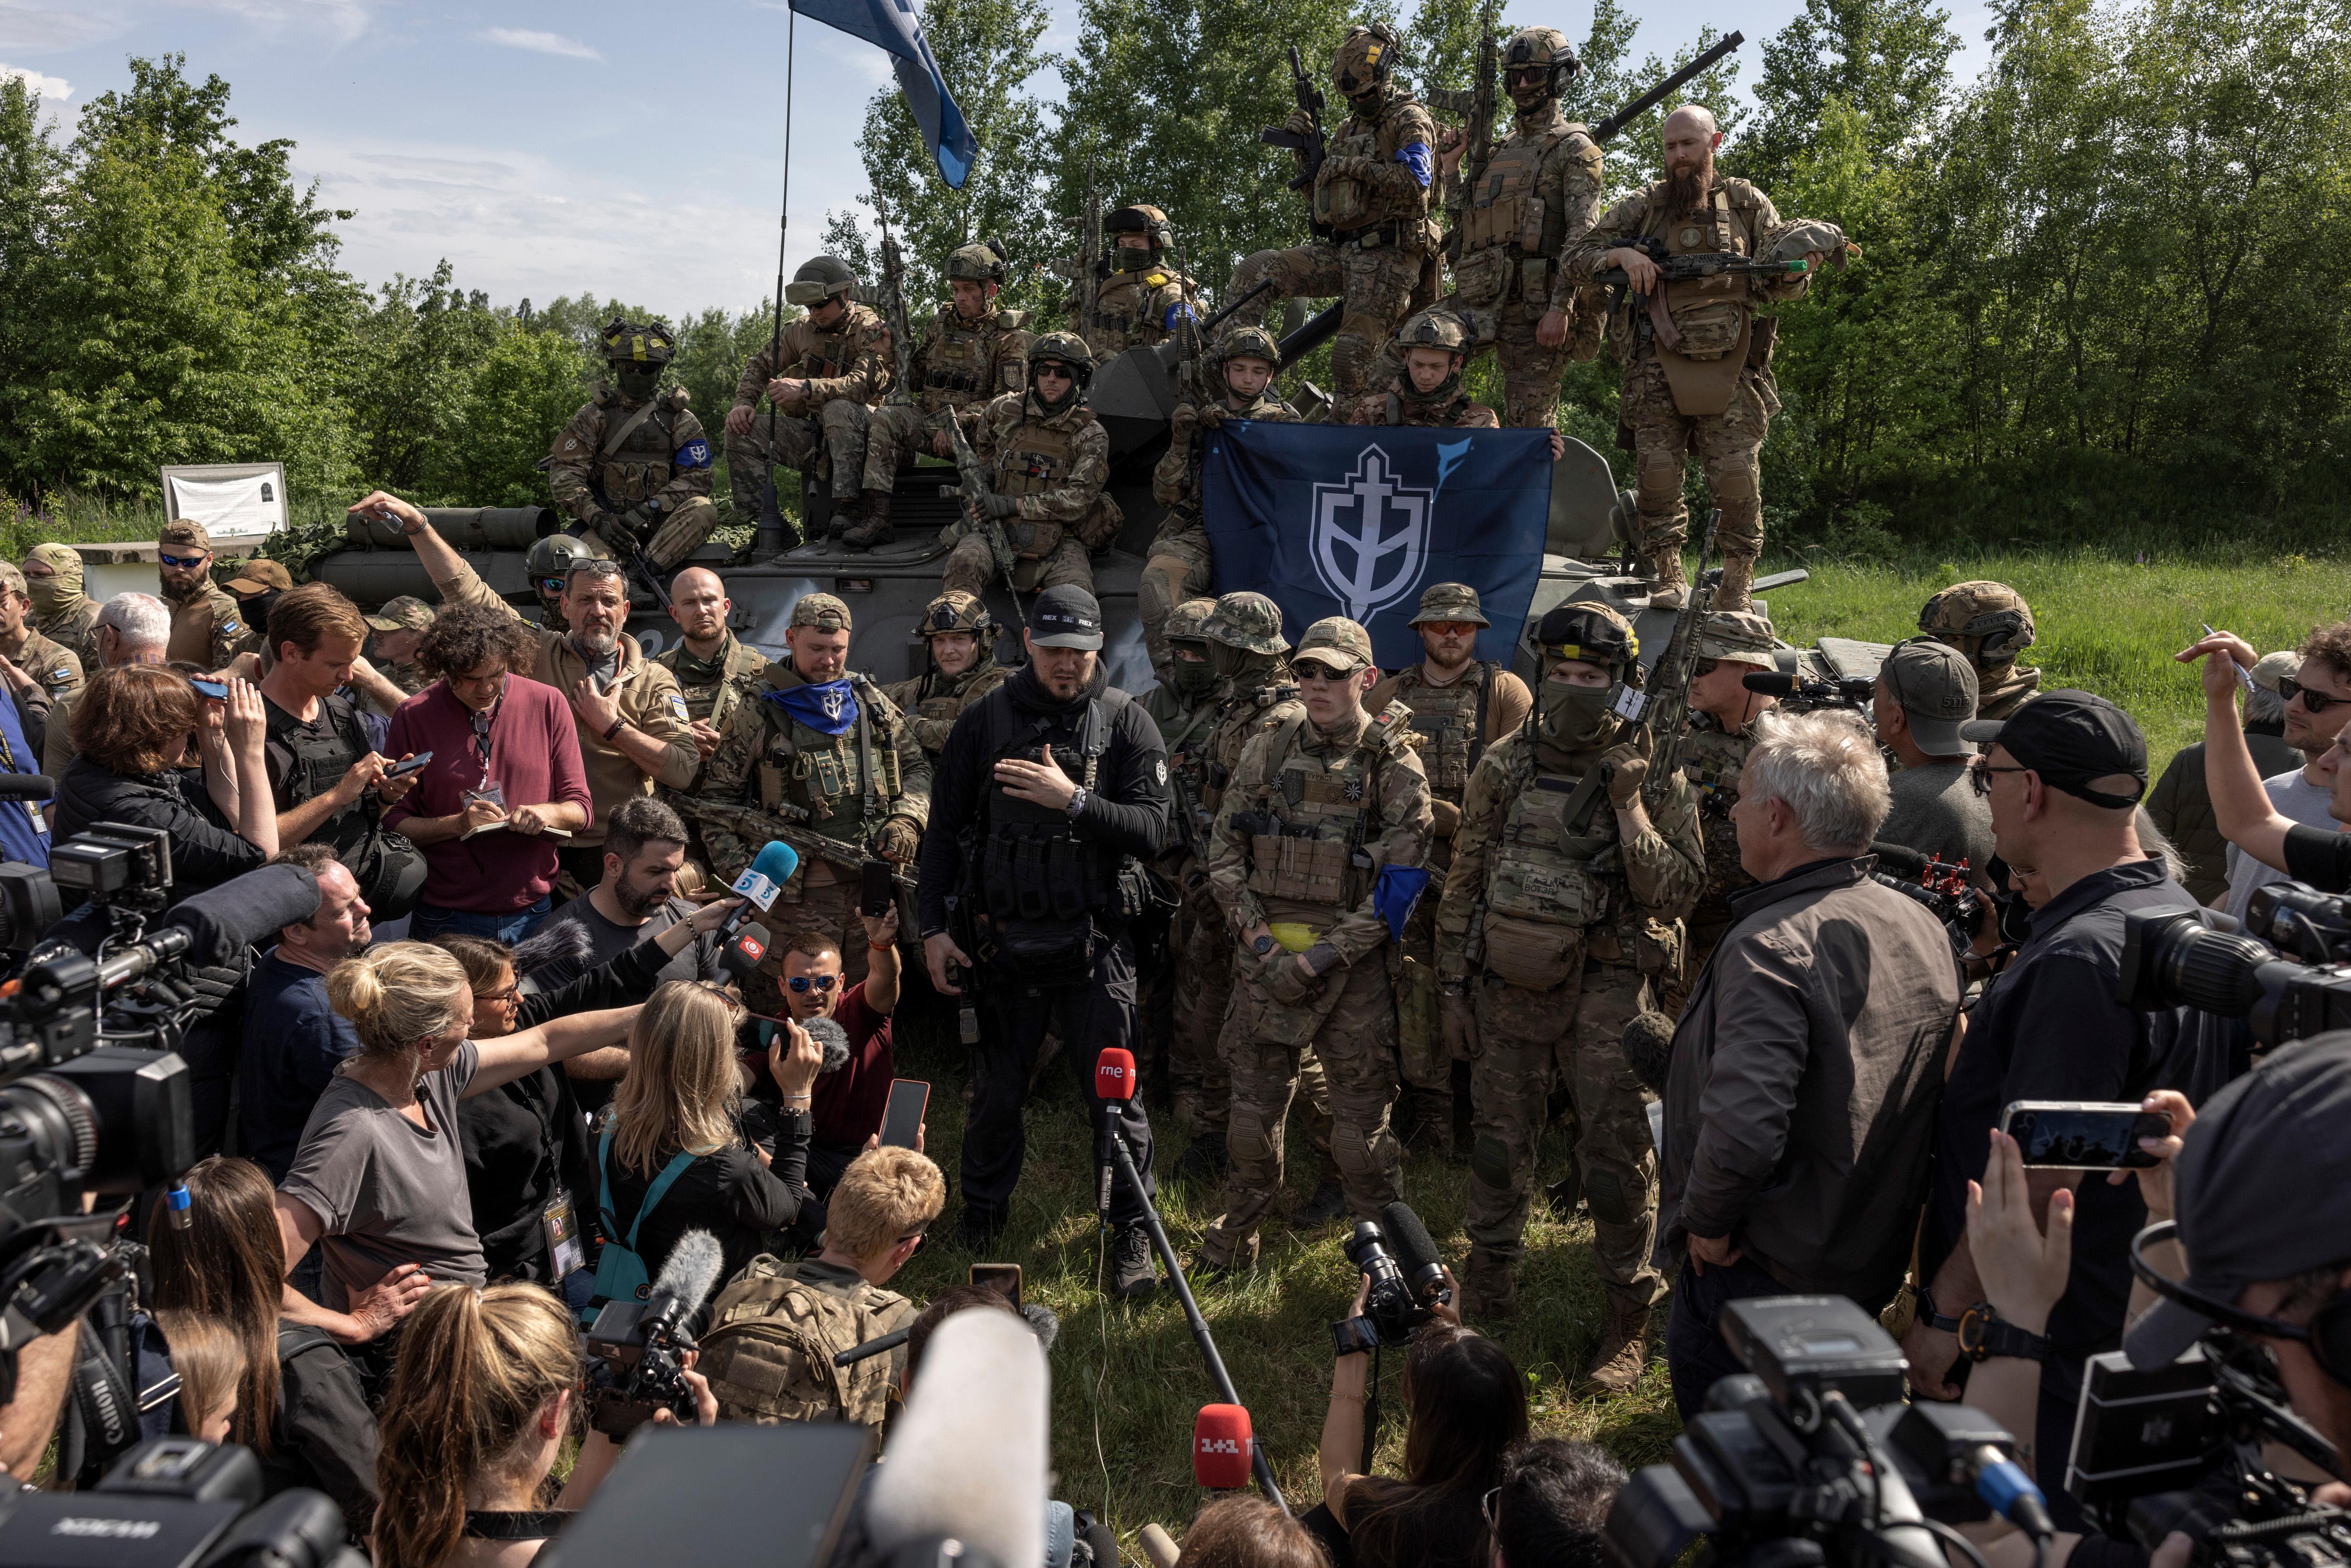 ESET Threat Report detalha ataques a alvos conectados a invasão russa na  Ucrânia e como a guerra mudou os cenários de ataques - DefesaNet